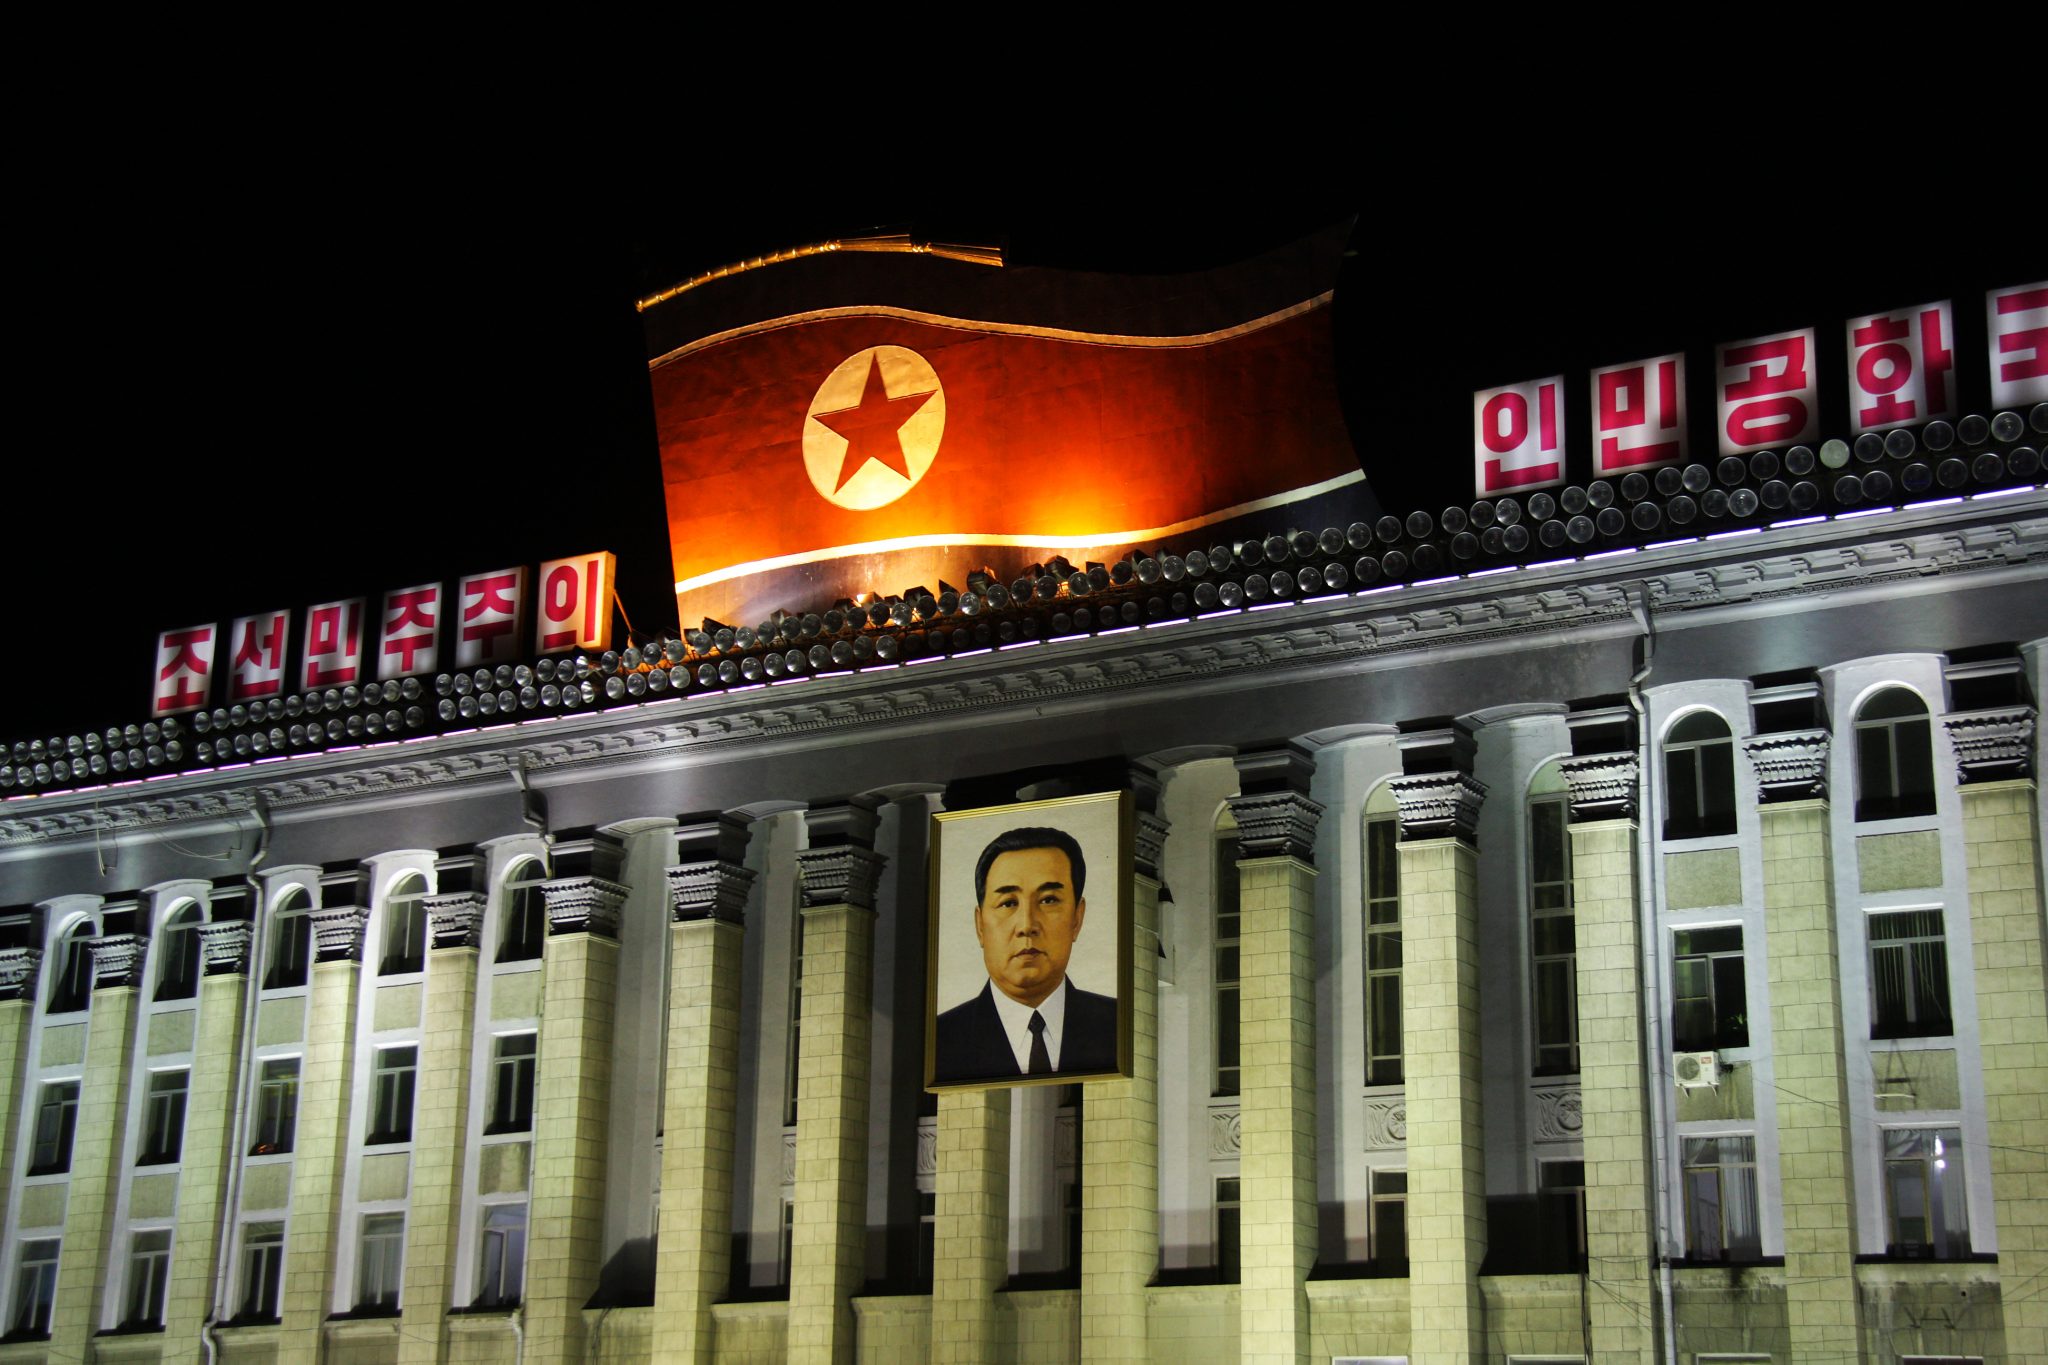 Valaistu hallintorakennus, jonka katolla valtava Pohjois-Korean lippu.